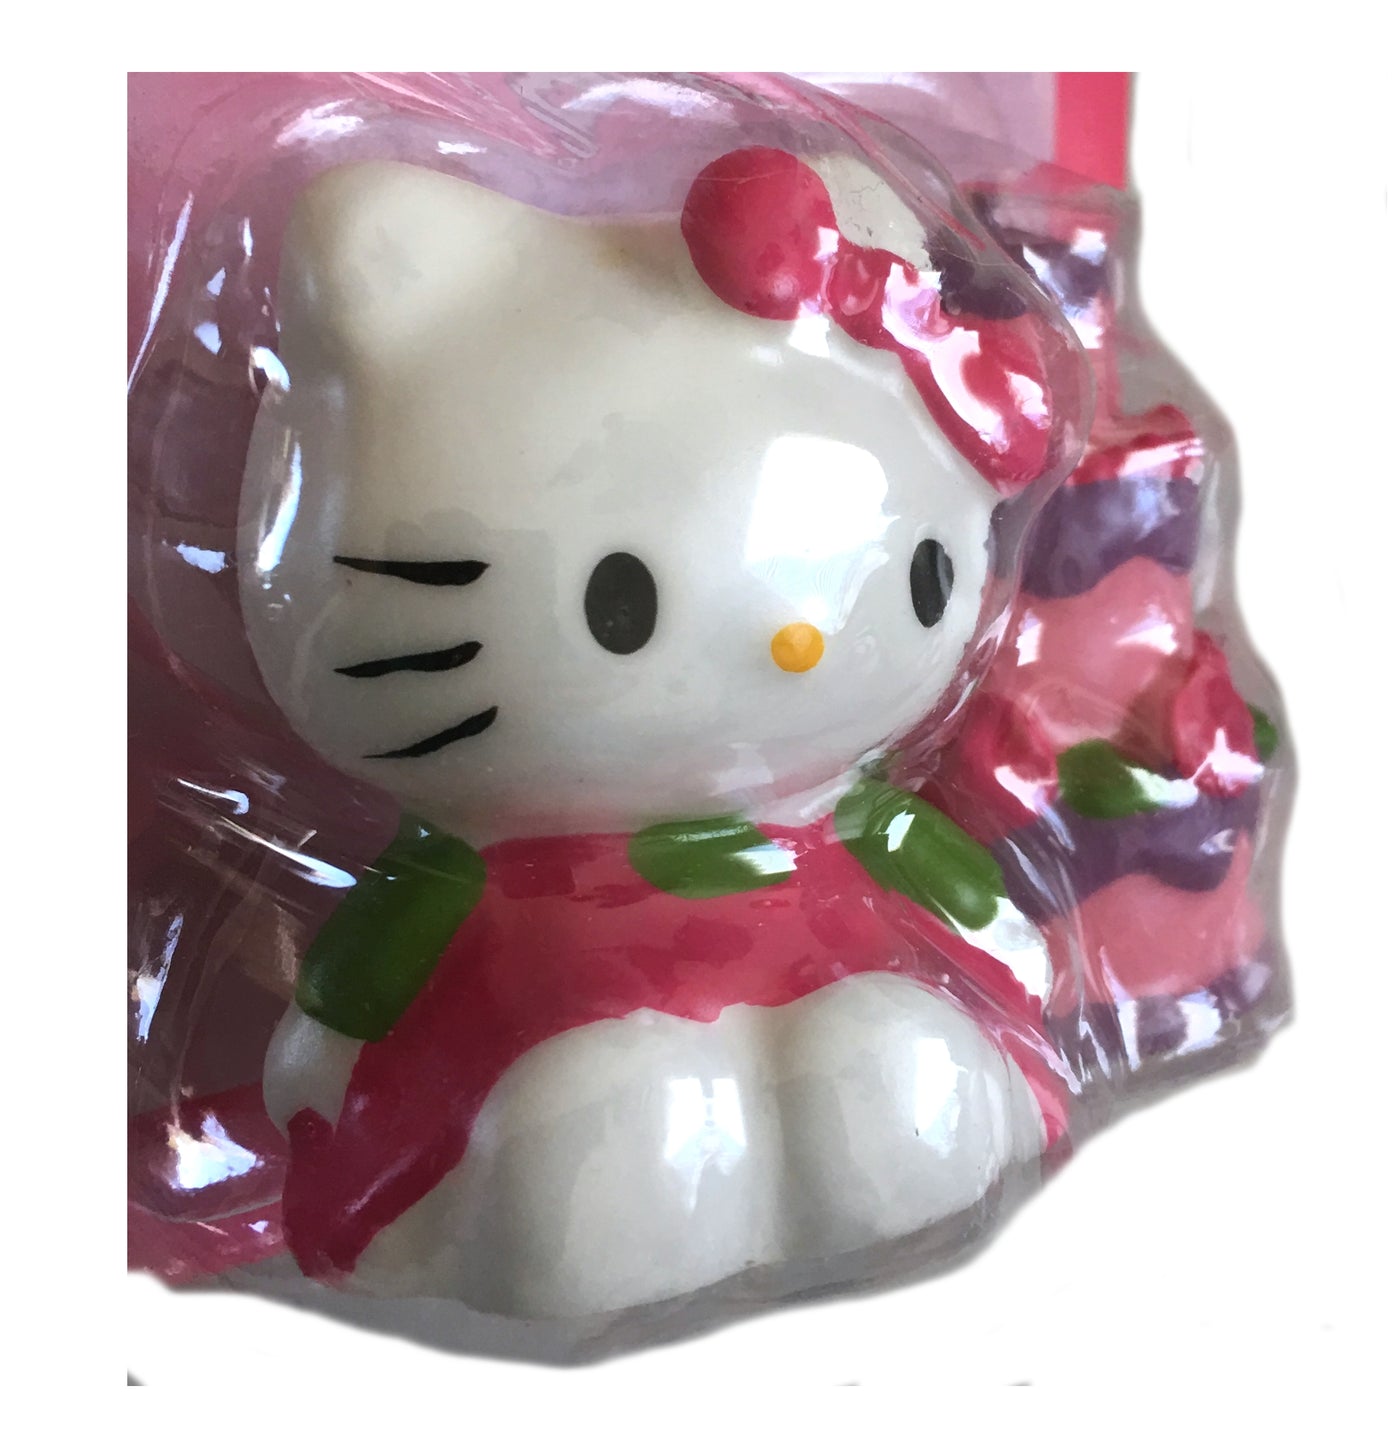 New Hello Kitty Wallpaper Border Sanrio Rare